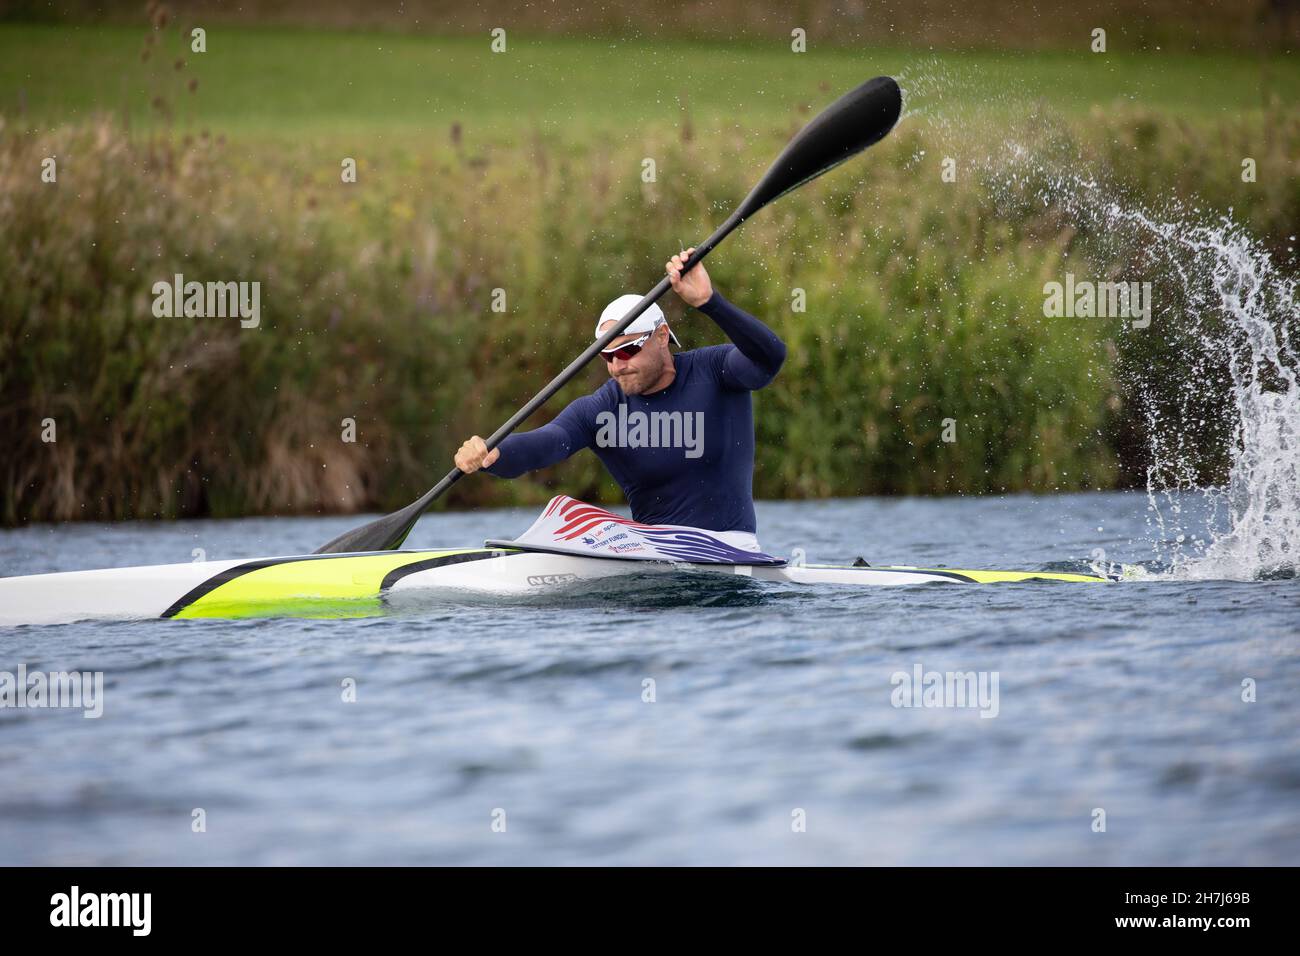 Der britische Sprint-Kanufahrer und mehrfache Olympiasieger Liam Heath, MBE, trainiere am 26th. August 2020 am Dorney Lake im Vereinigten Königreich. Stockfoto